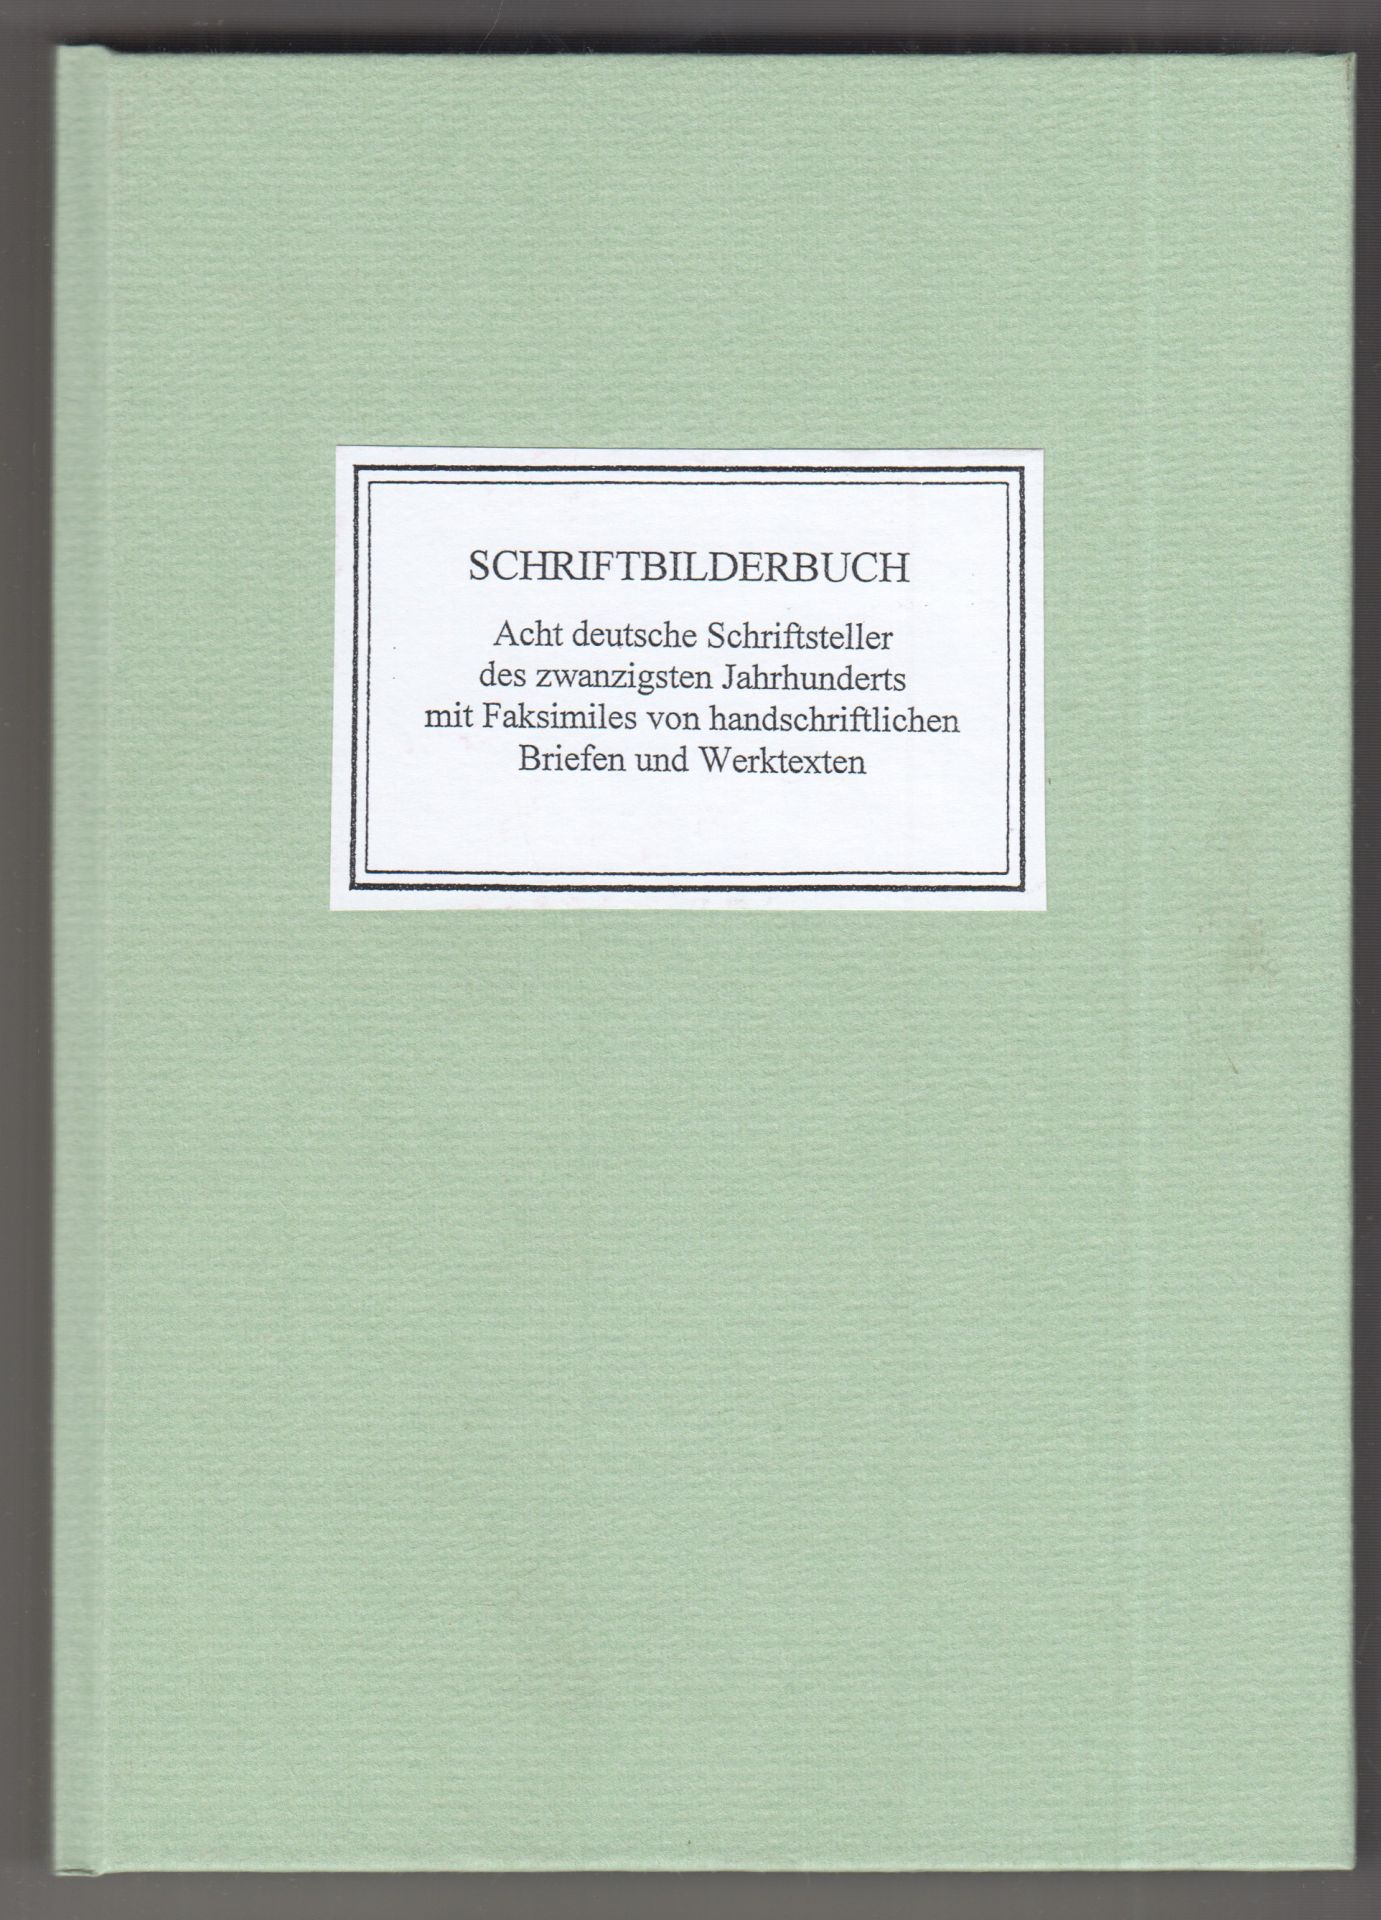 FITZBAUER, Erich. Schriftbilderbuch. Acht deutsche Schriftsteller des zwanzigsten Jahrhunderts mit Faksimiles von handschriftlichen Briefen und Werktexten.